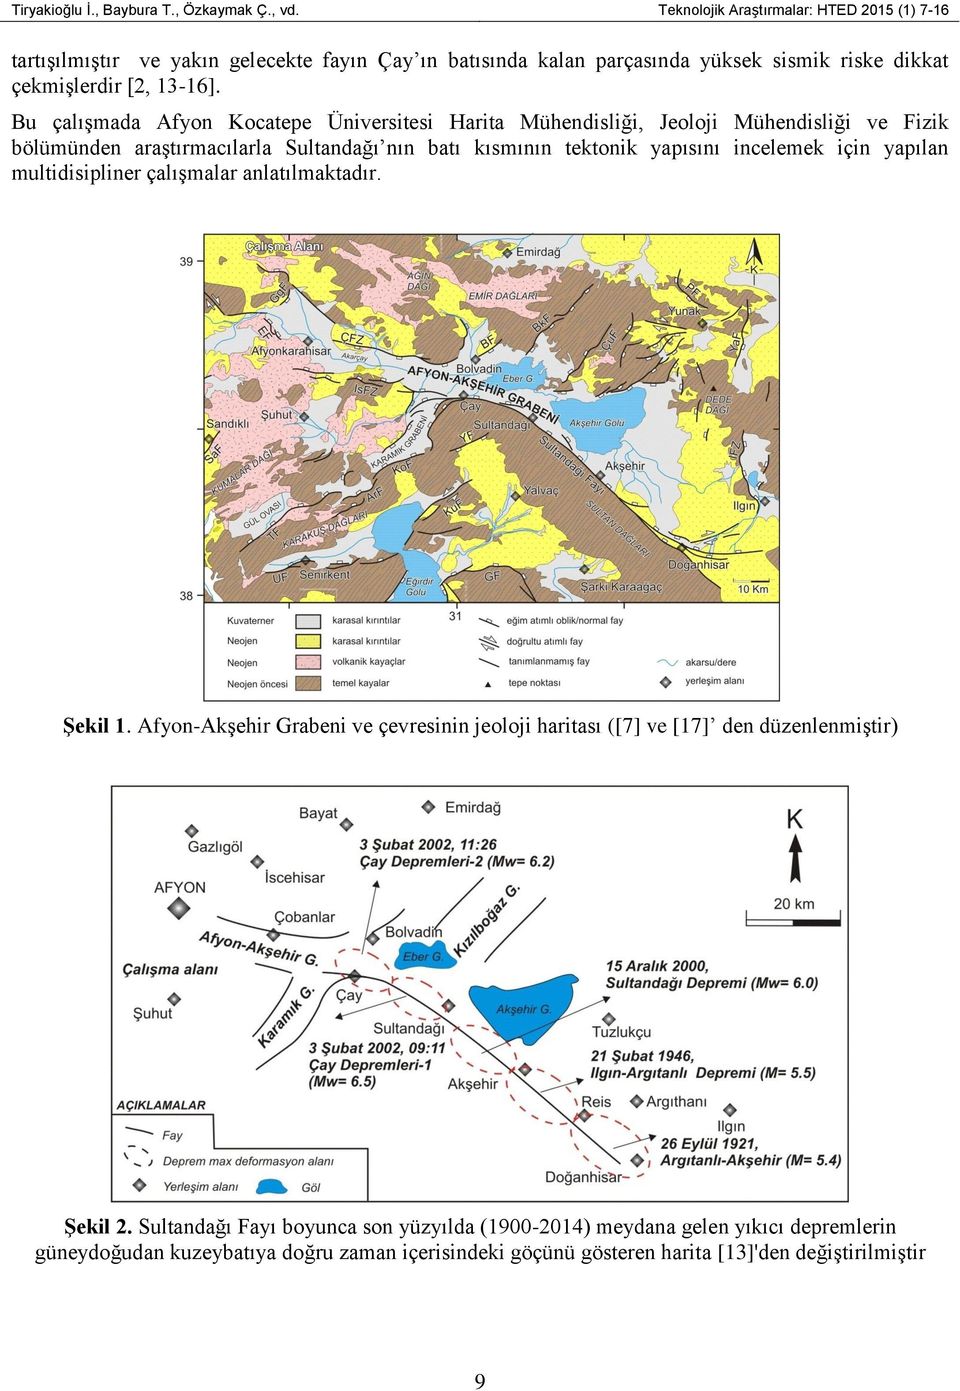 Bu çalışmada Afyon Kocatepe Üniversitesi Harita Mühendisliği, Jeoloji Mühendisliği ve Fizik bölümünden araştırmacılarla Sultandağı nın batı kısmının tektonik yapısını incelemek için